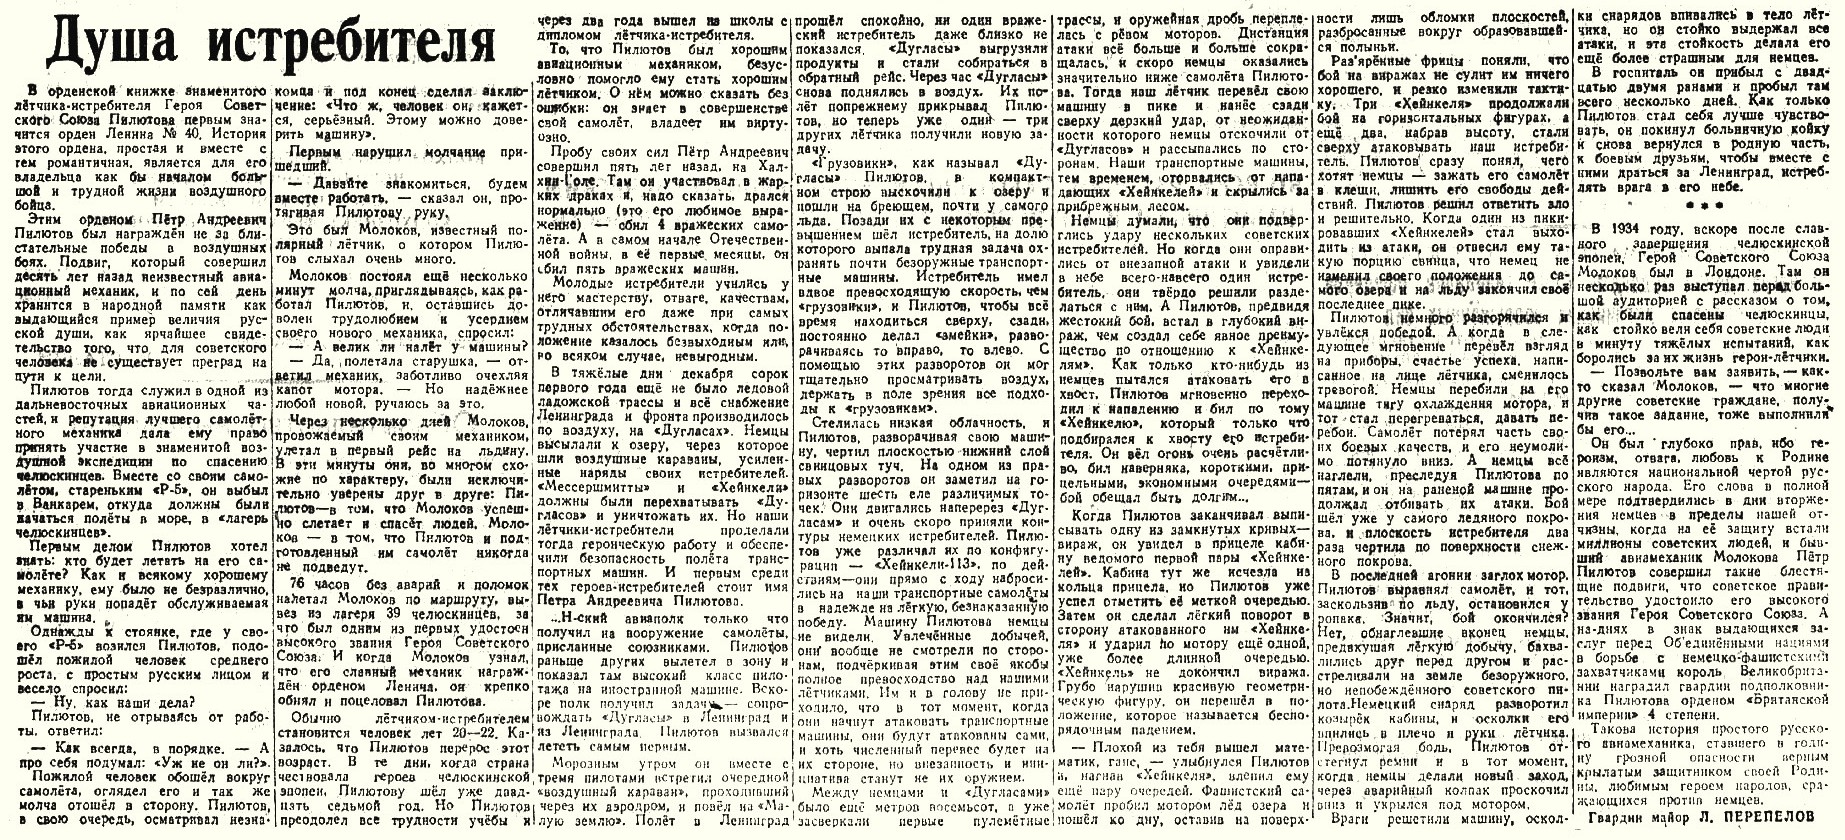 Из газеты 'Ленинградская Правда' от 25.05.1944 г.